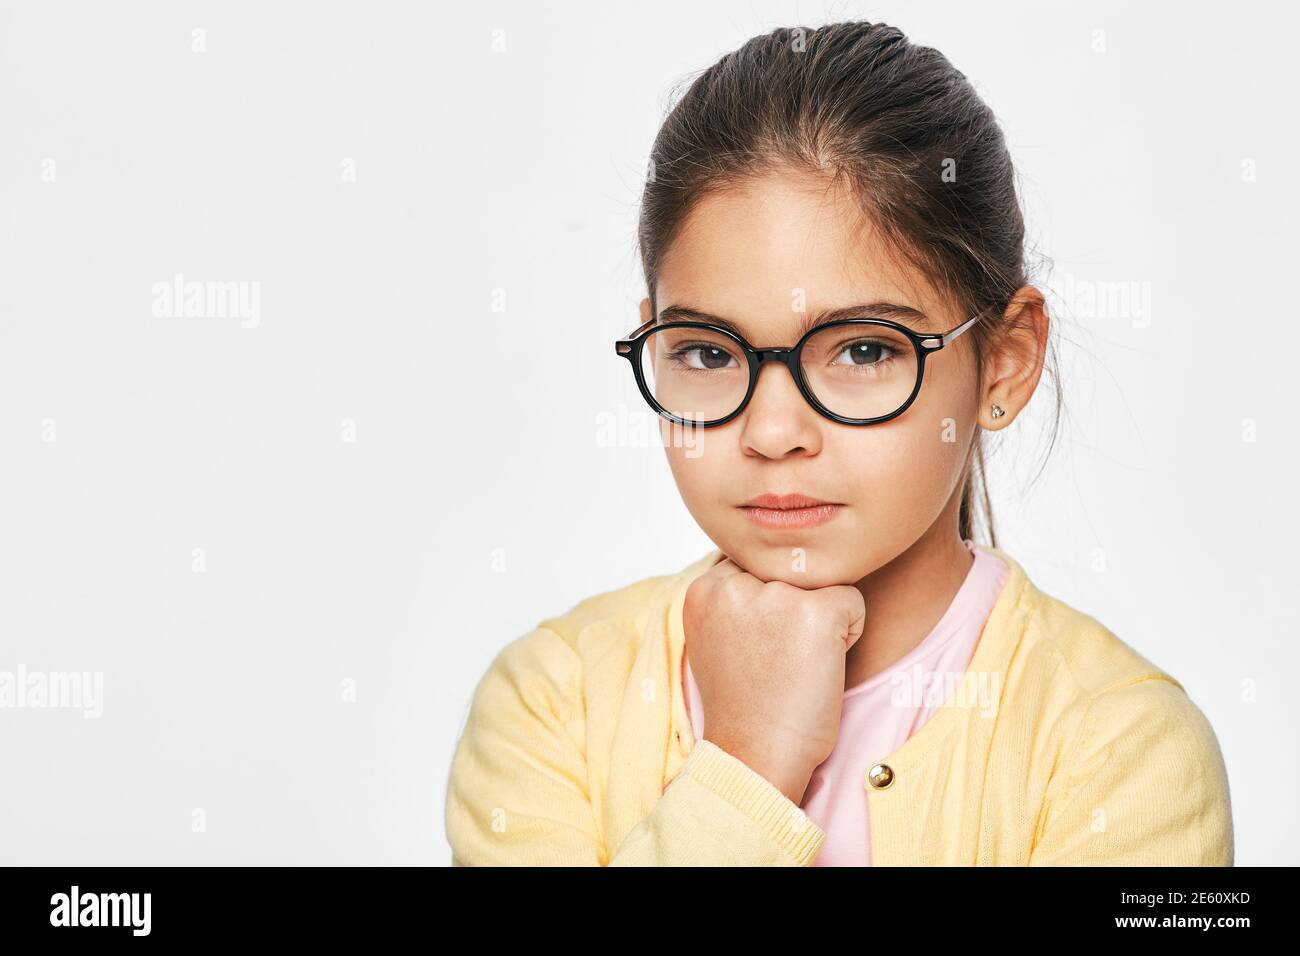 Serious hispanischen weiblichen Kind tragen Brillen Blick nachdenklich auf Kamera, Nahaufnahme, auf weißem Hintergrund Stockfoto